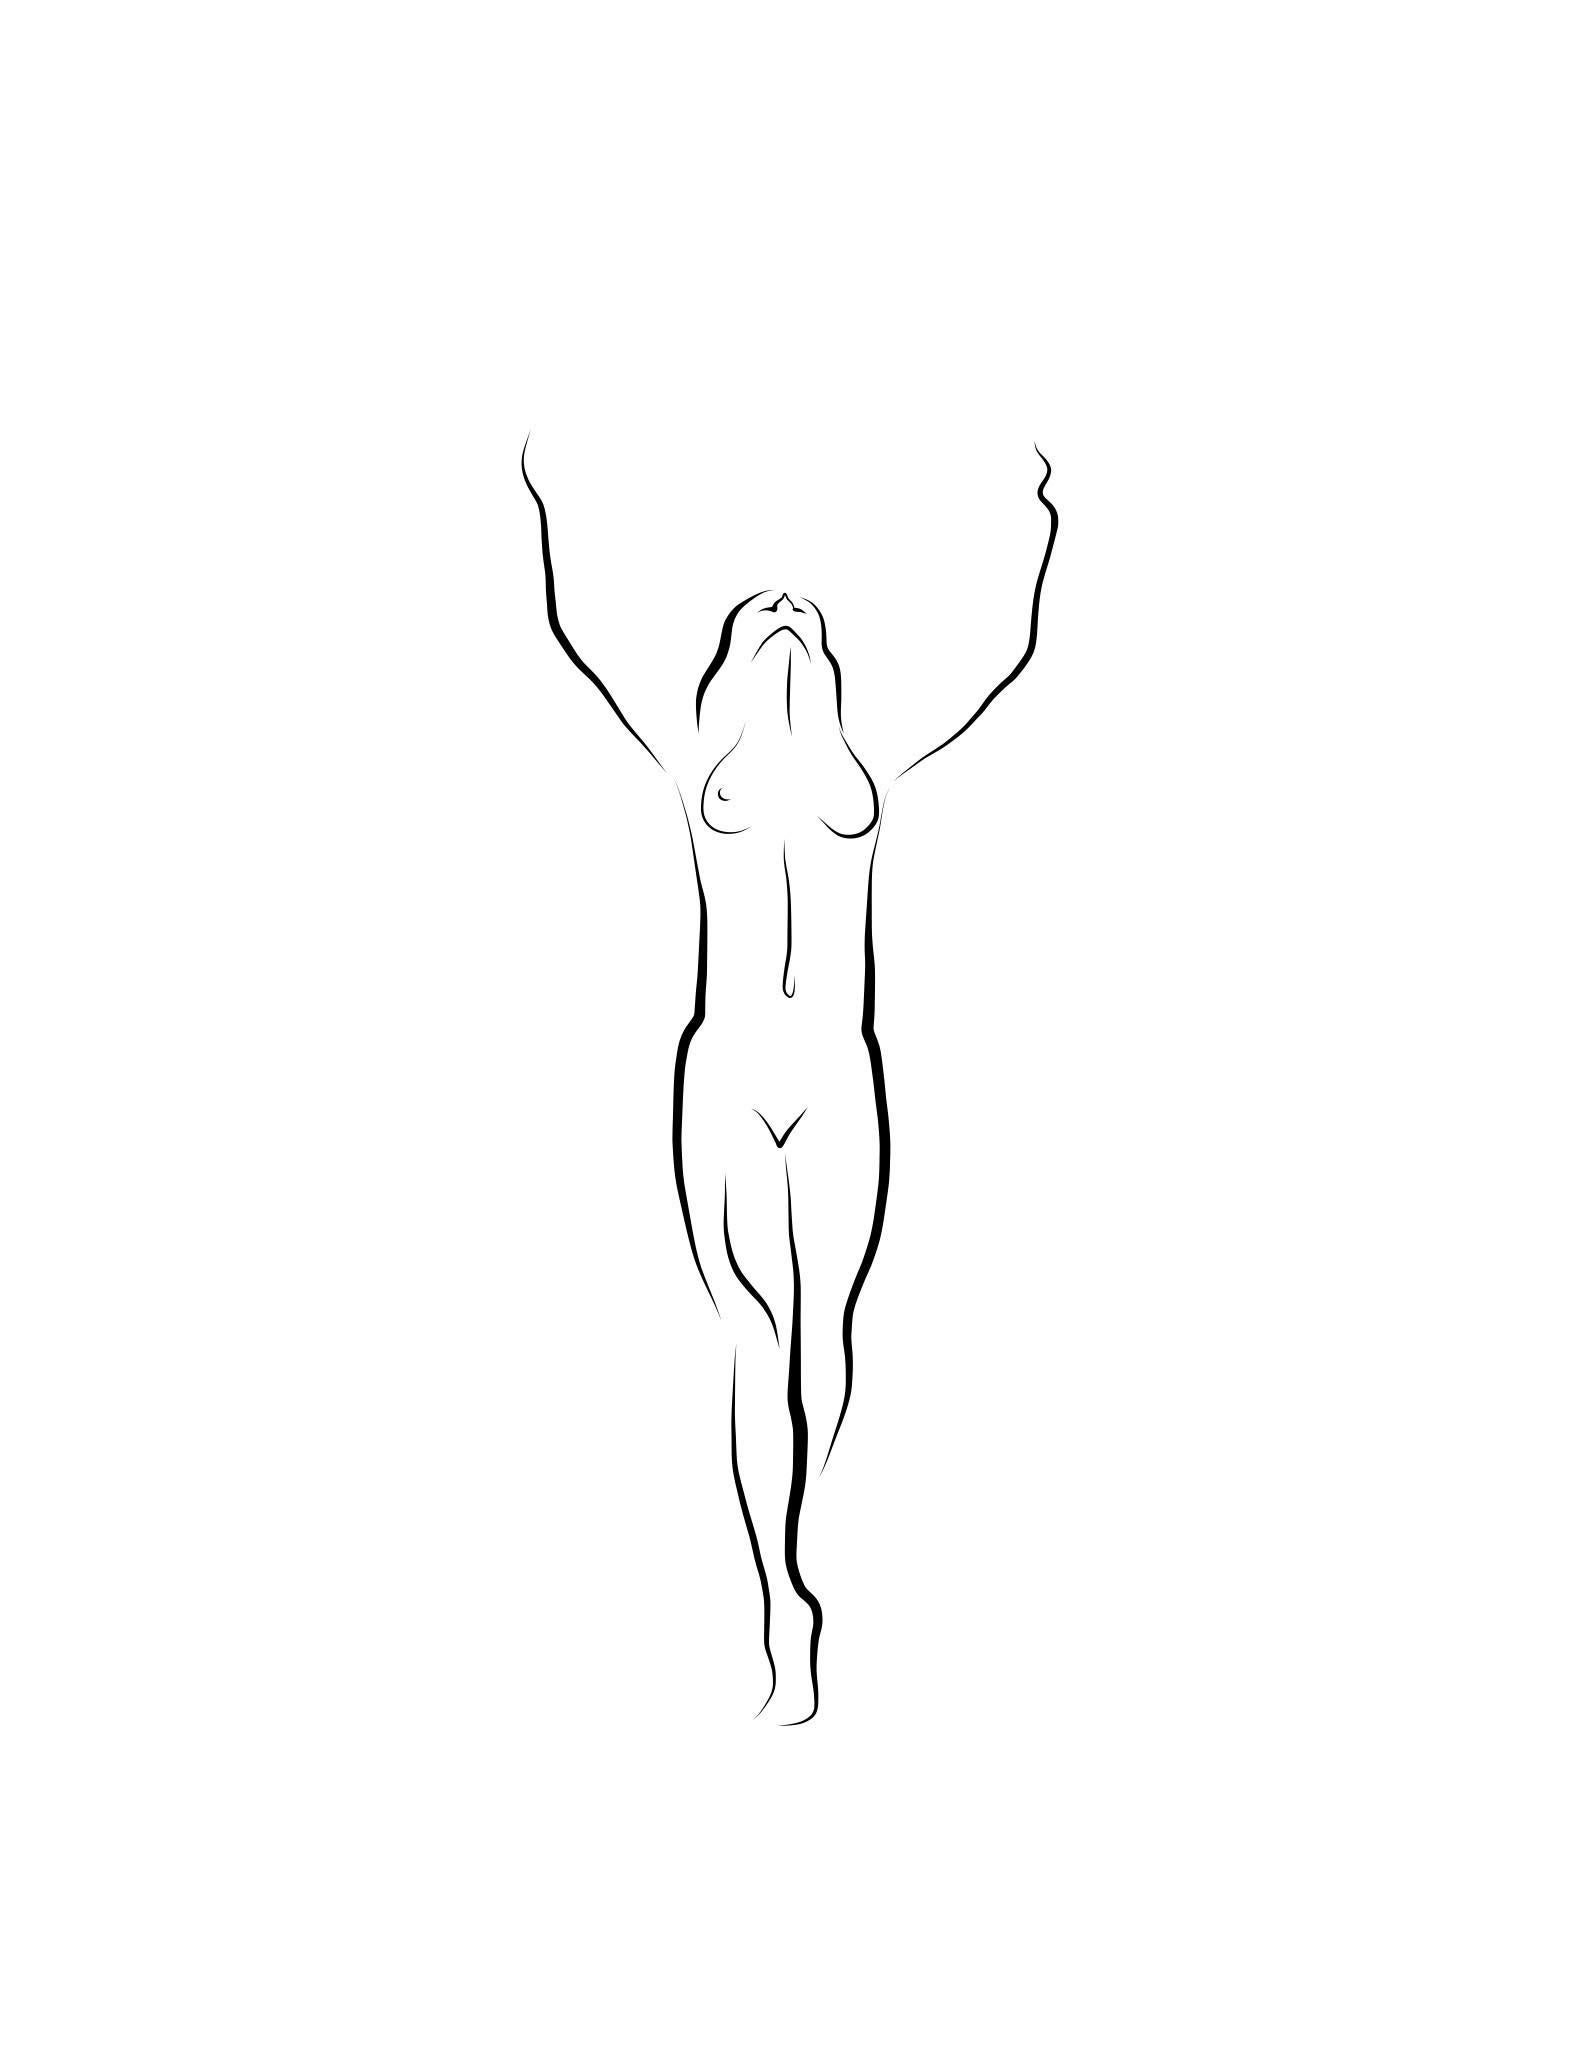 Michael Binkley Nude Print - Haiku #48, 1/ 50 - Digital Vector Drawing Standing Female Nude Woman Figure